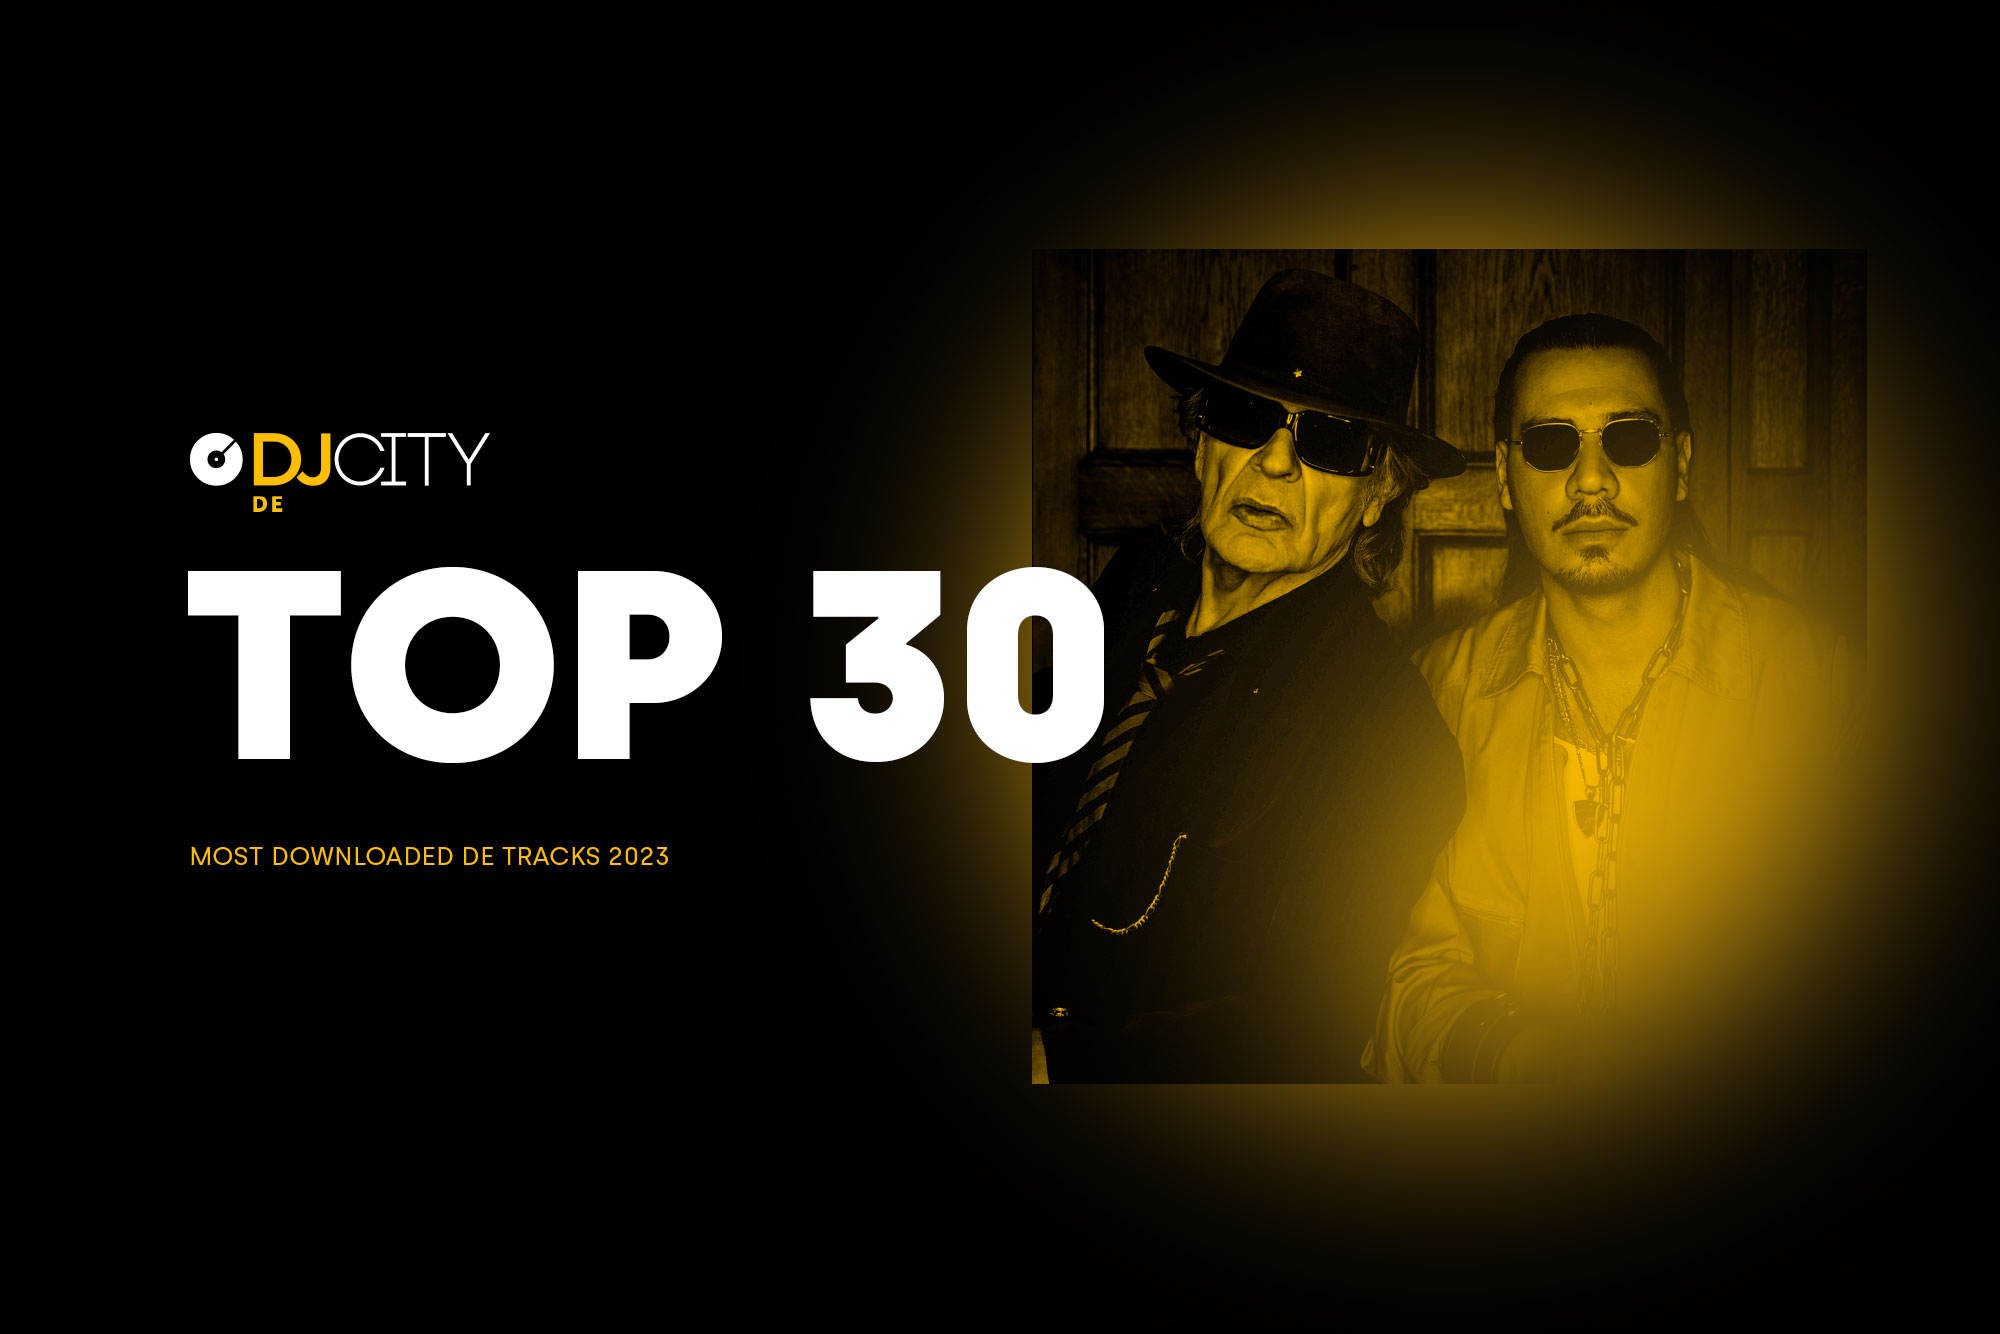 DJcity’s 30 Most Downloaded DE Tracks of 2023